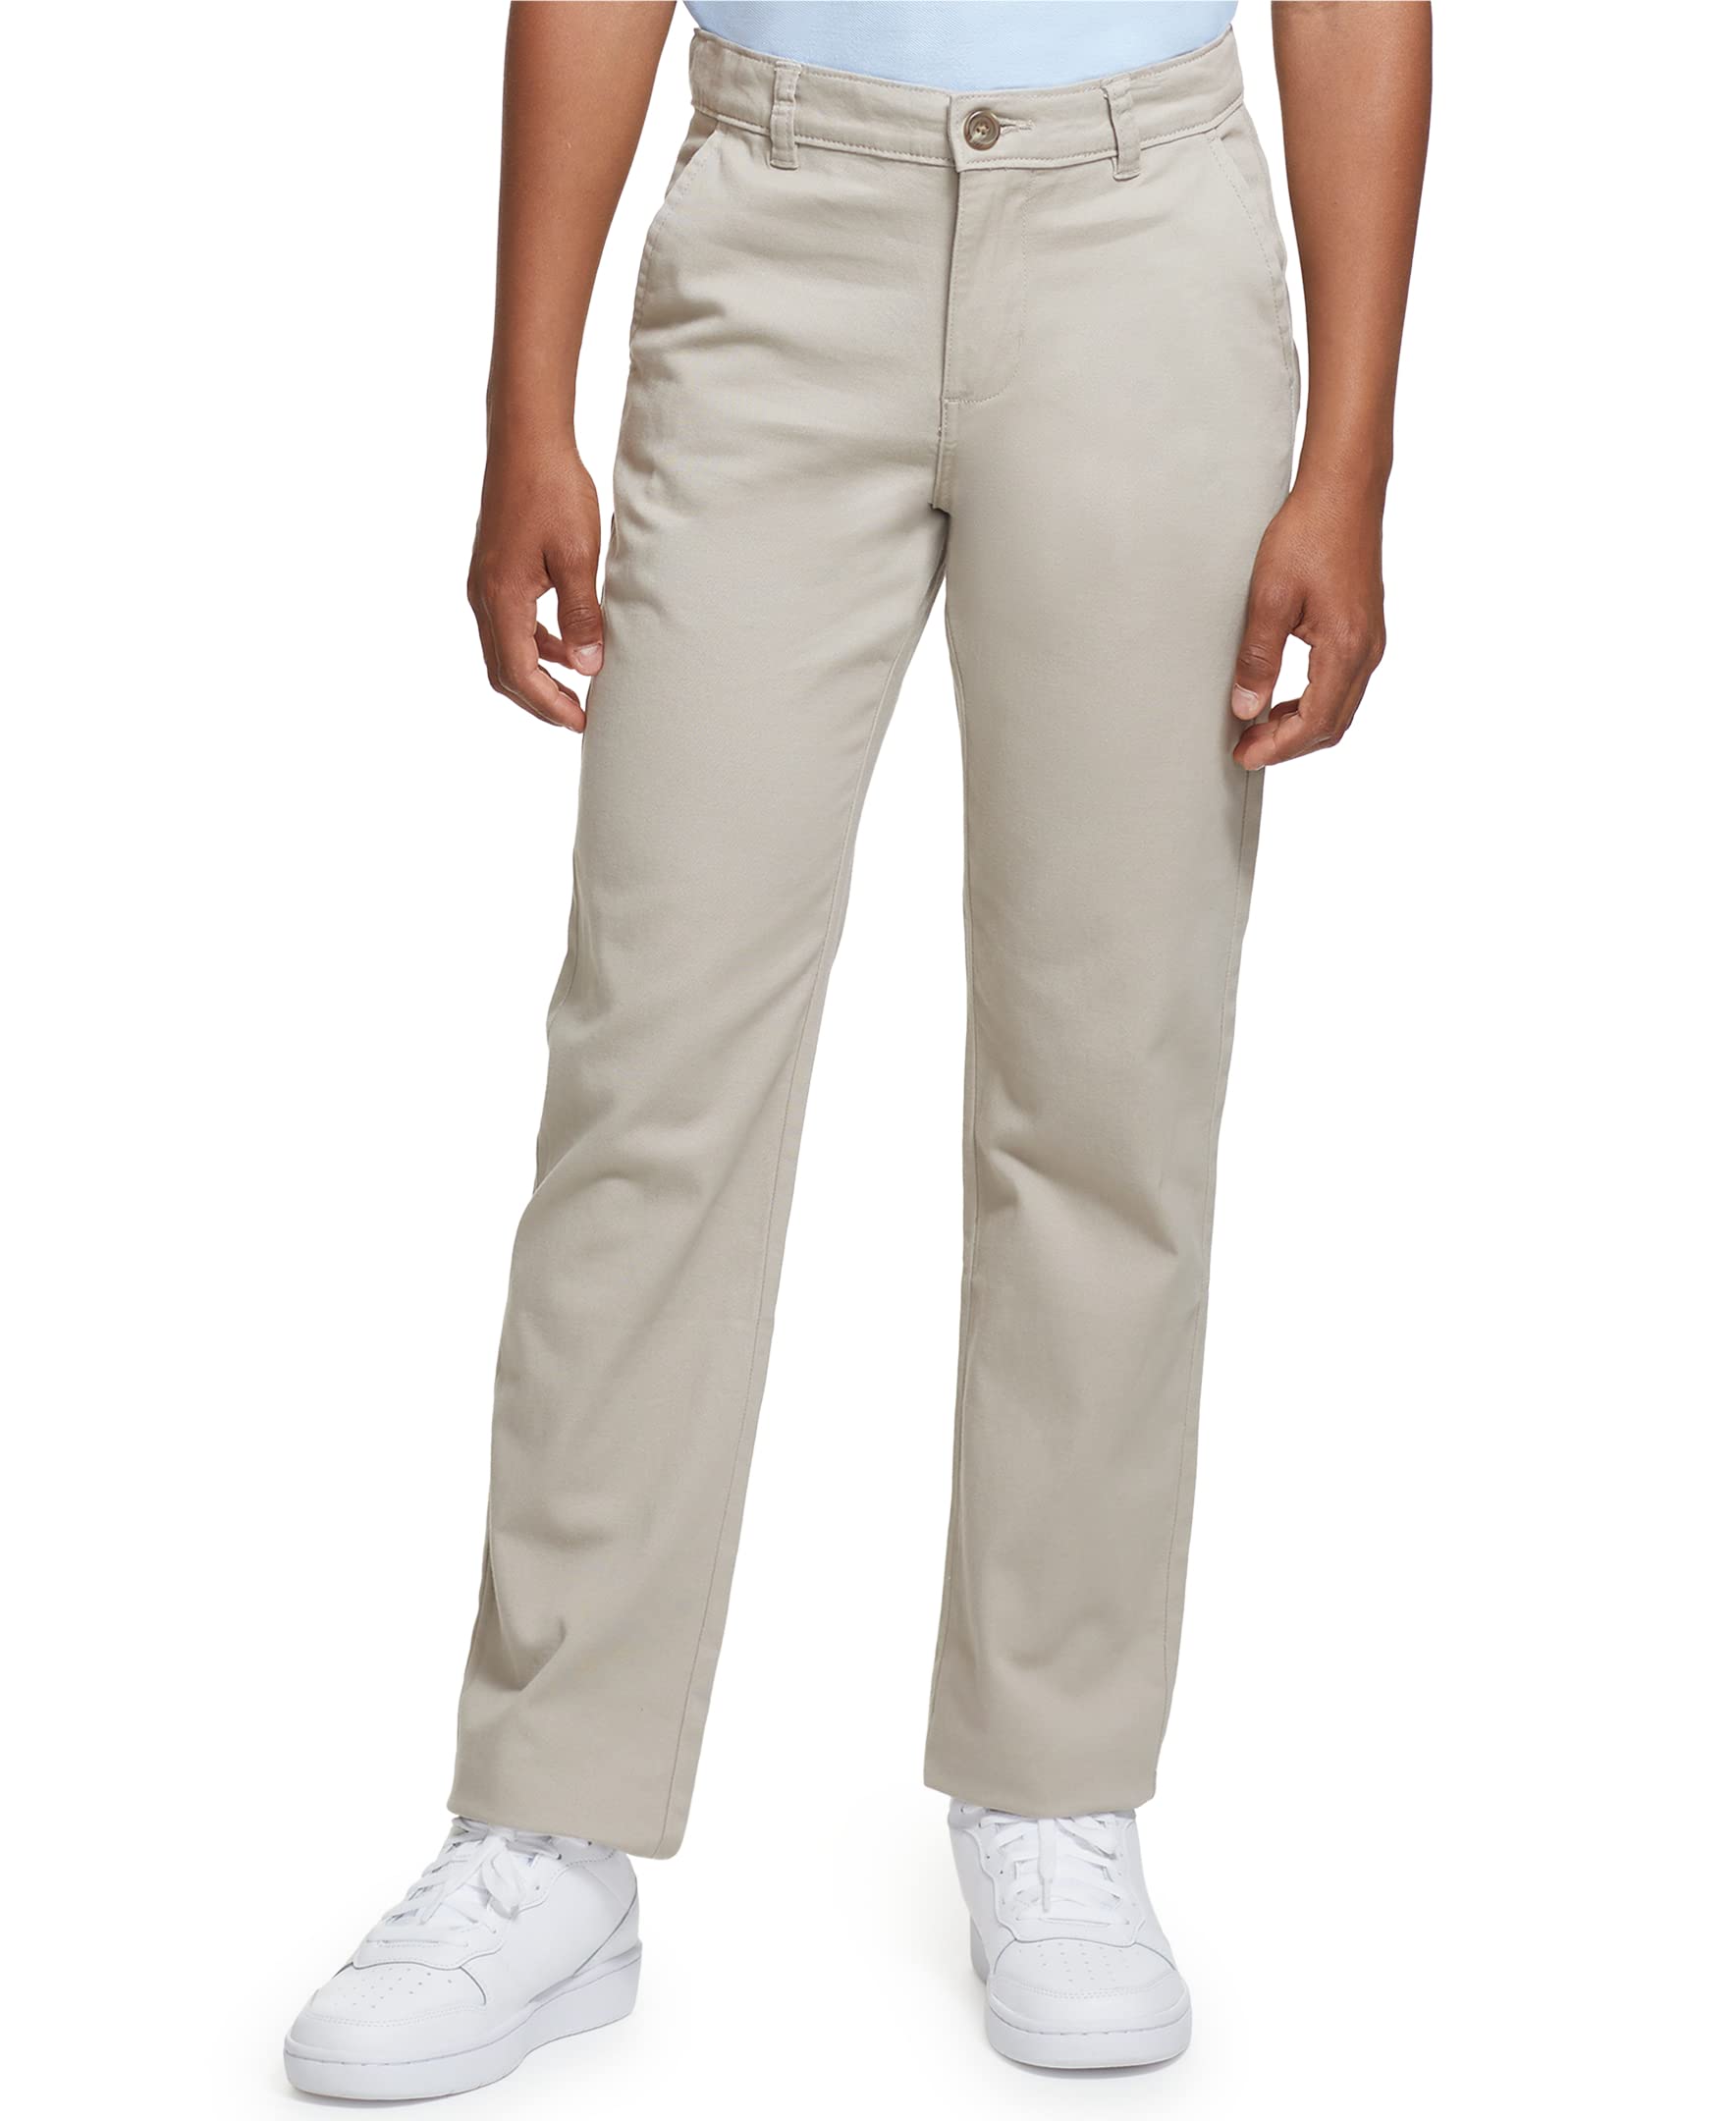 IZOD Boys' School Uniform Twill Khaki Pants, Flat Front & Comfortable Waistband